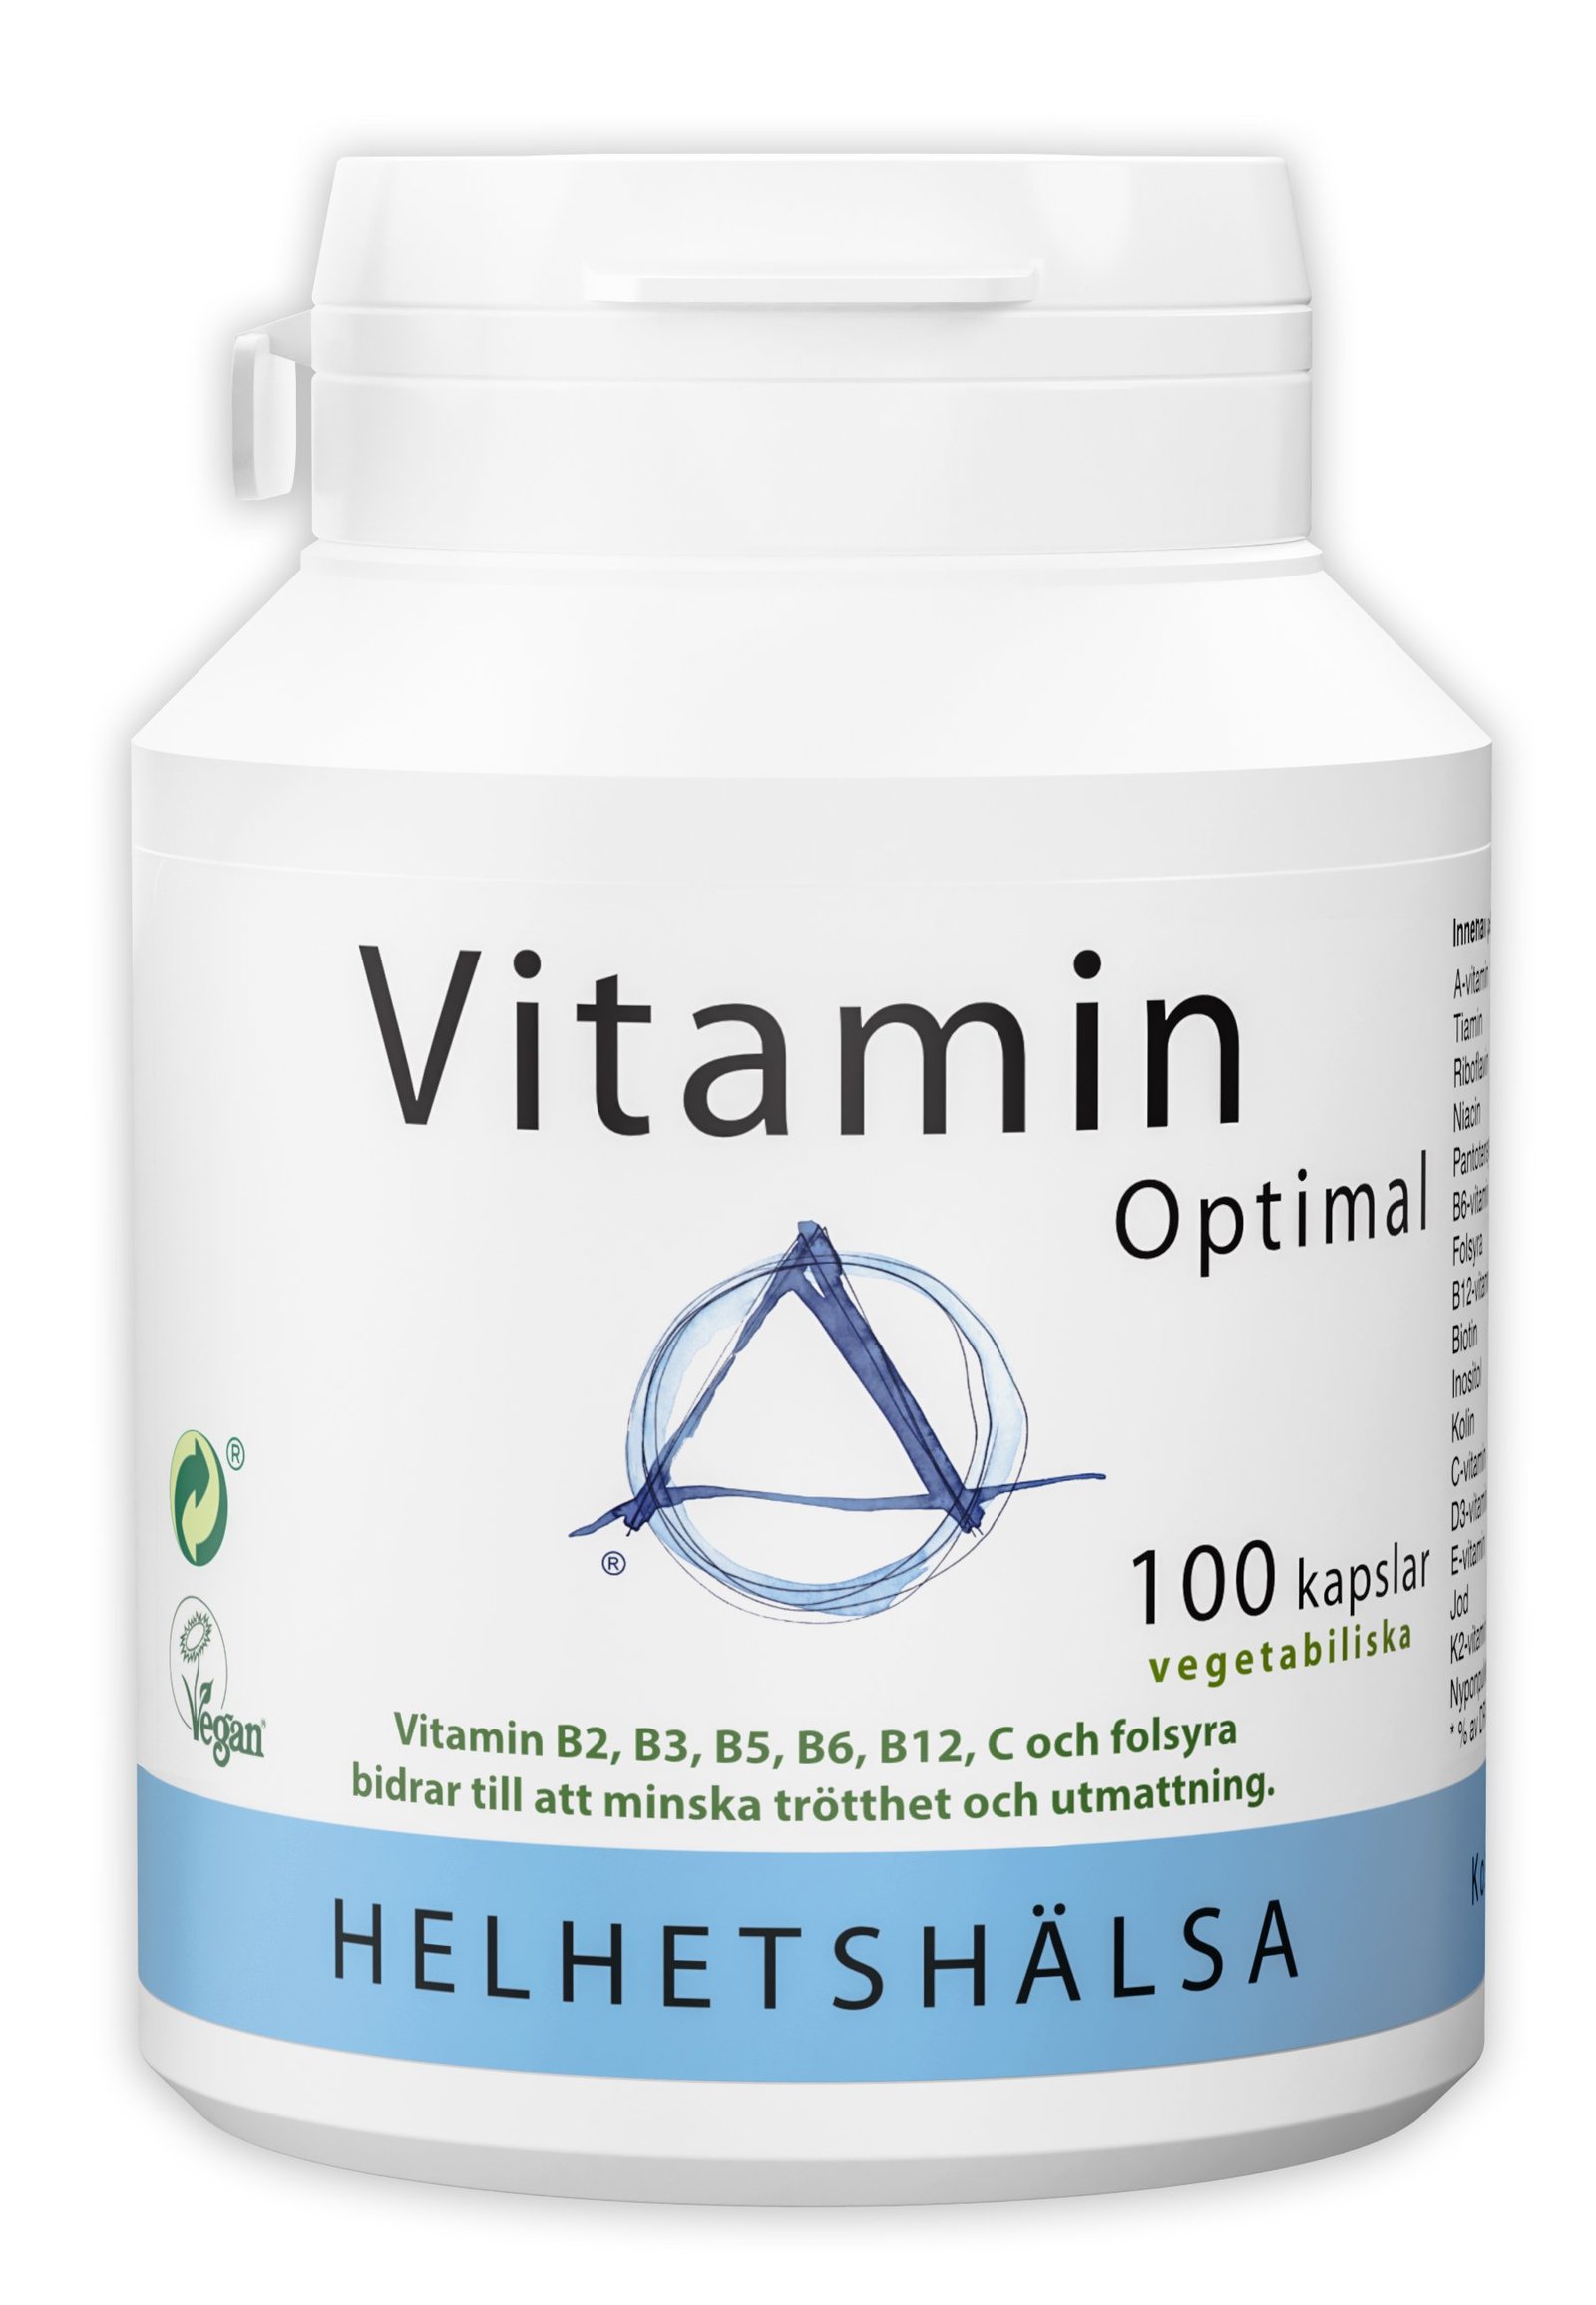 Helhetshälsa VitaminOptimal 100 kapslar